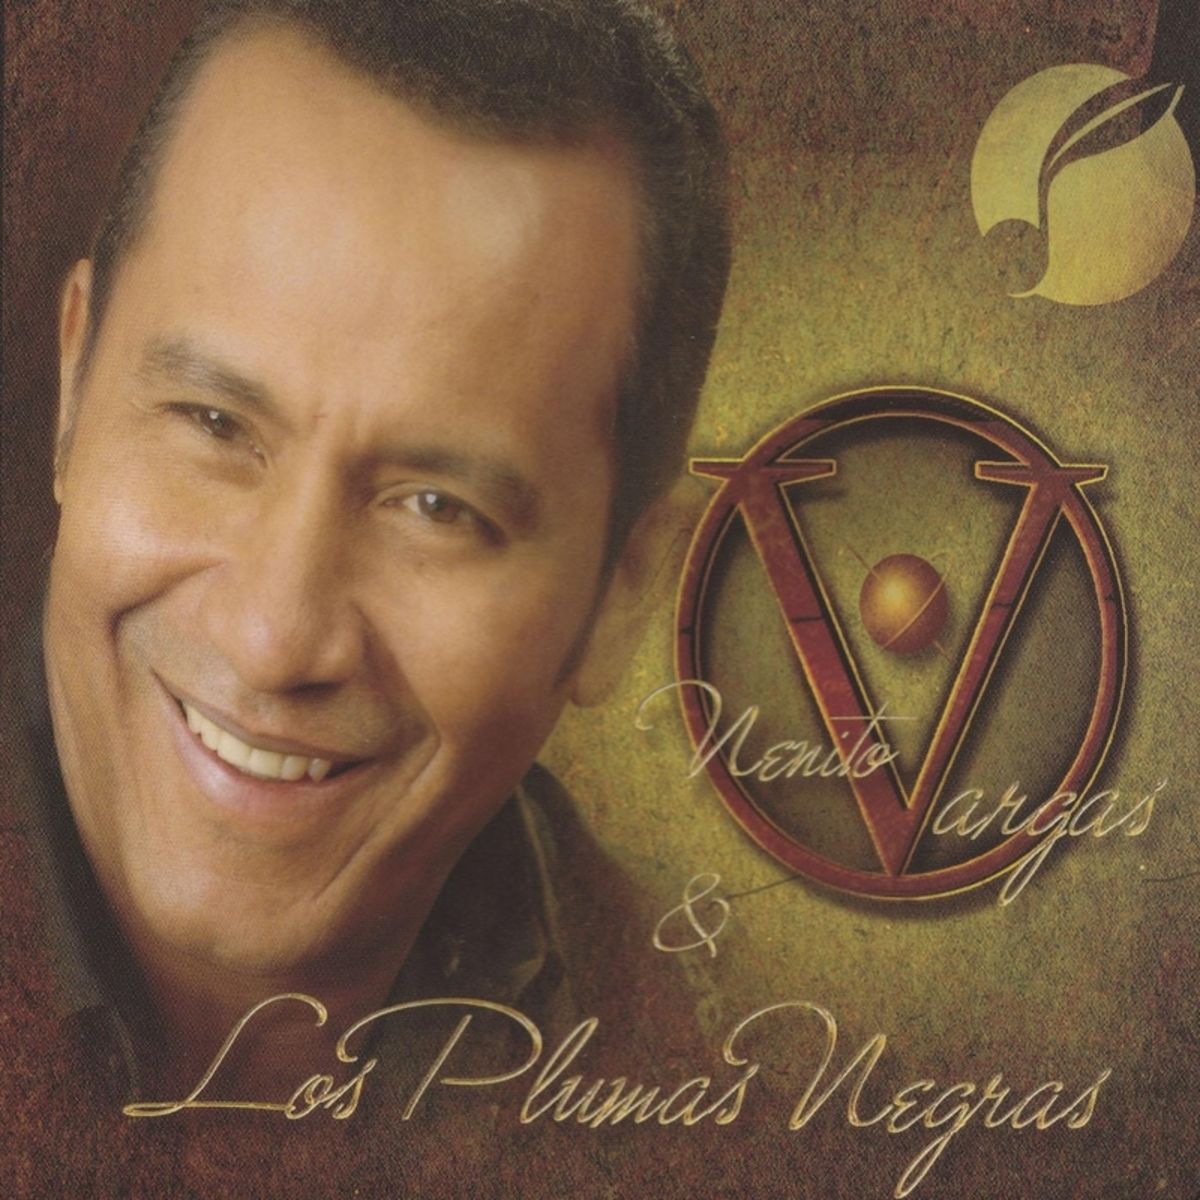 10 - Nenito Vargas y los Plumas Negras - La Emperatriz del Canto.mp3